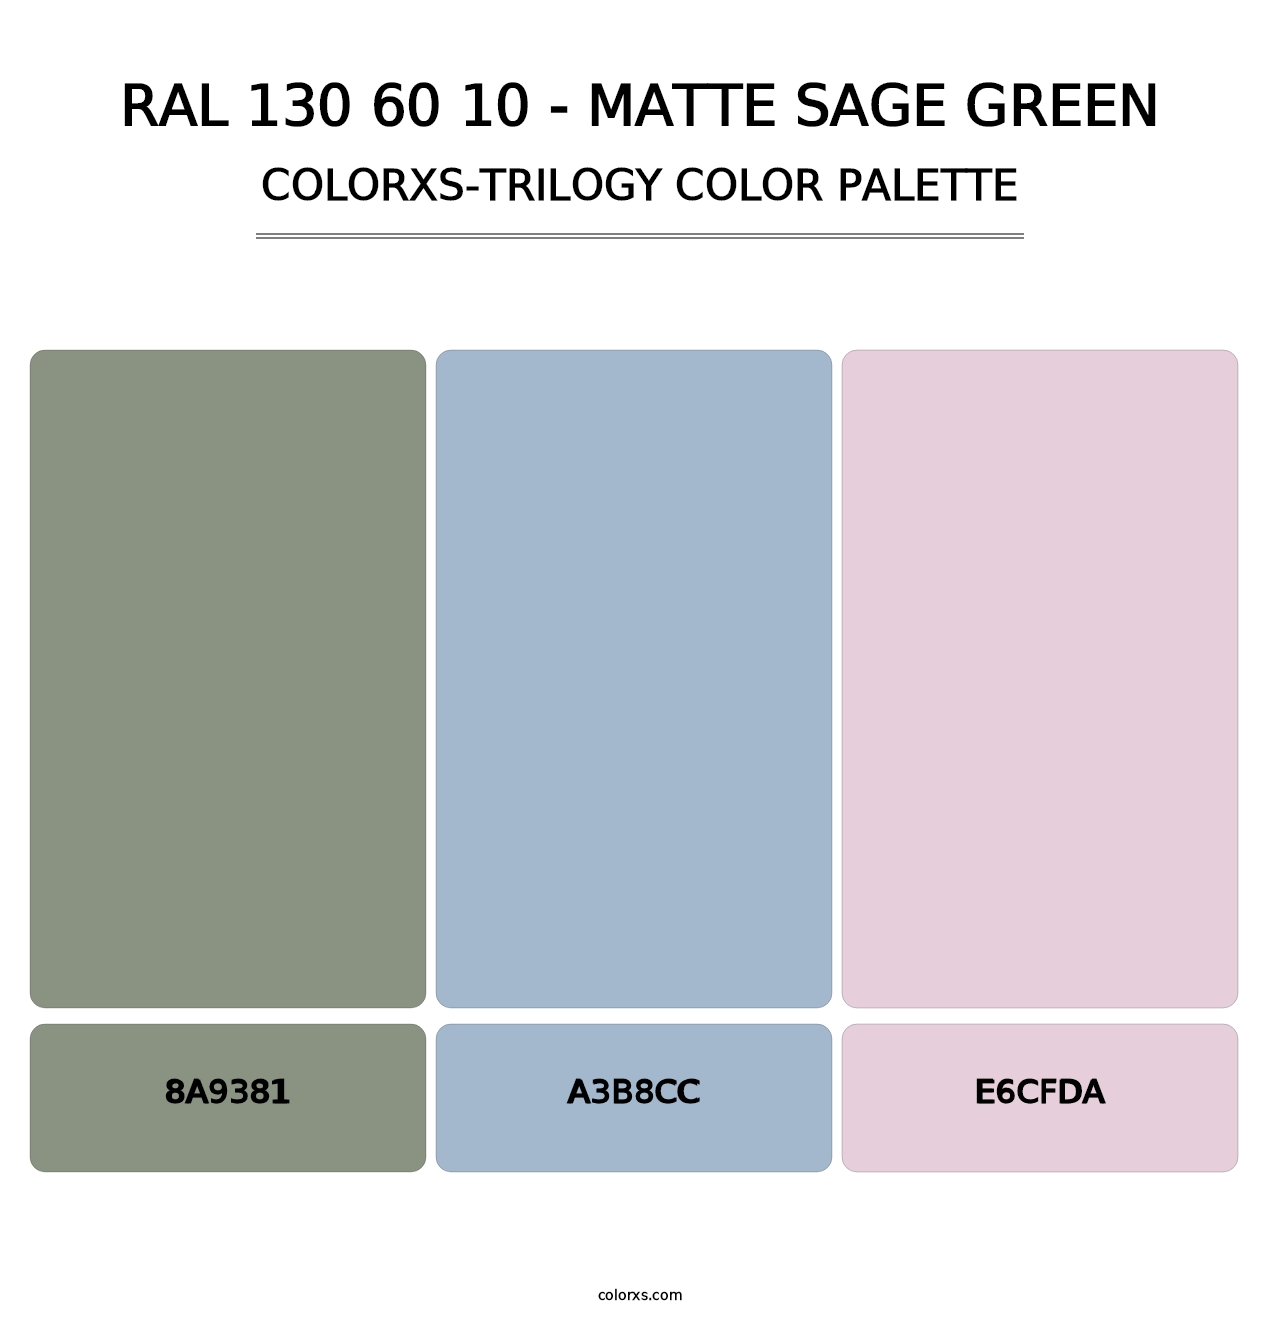 RAL 130 60 10 - Matte Sage Green - Colorxs Trilogy Palette